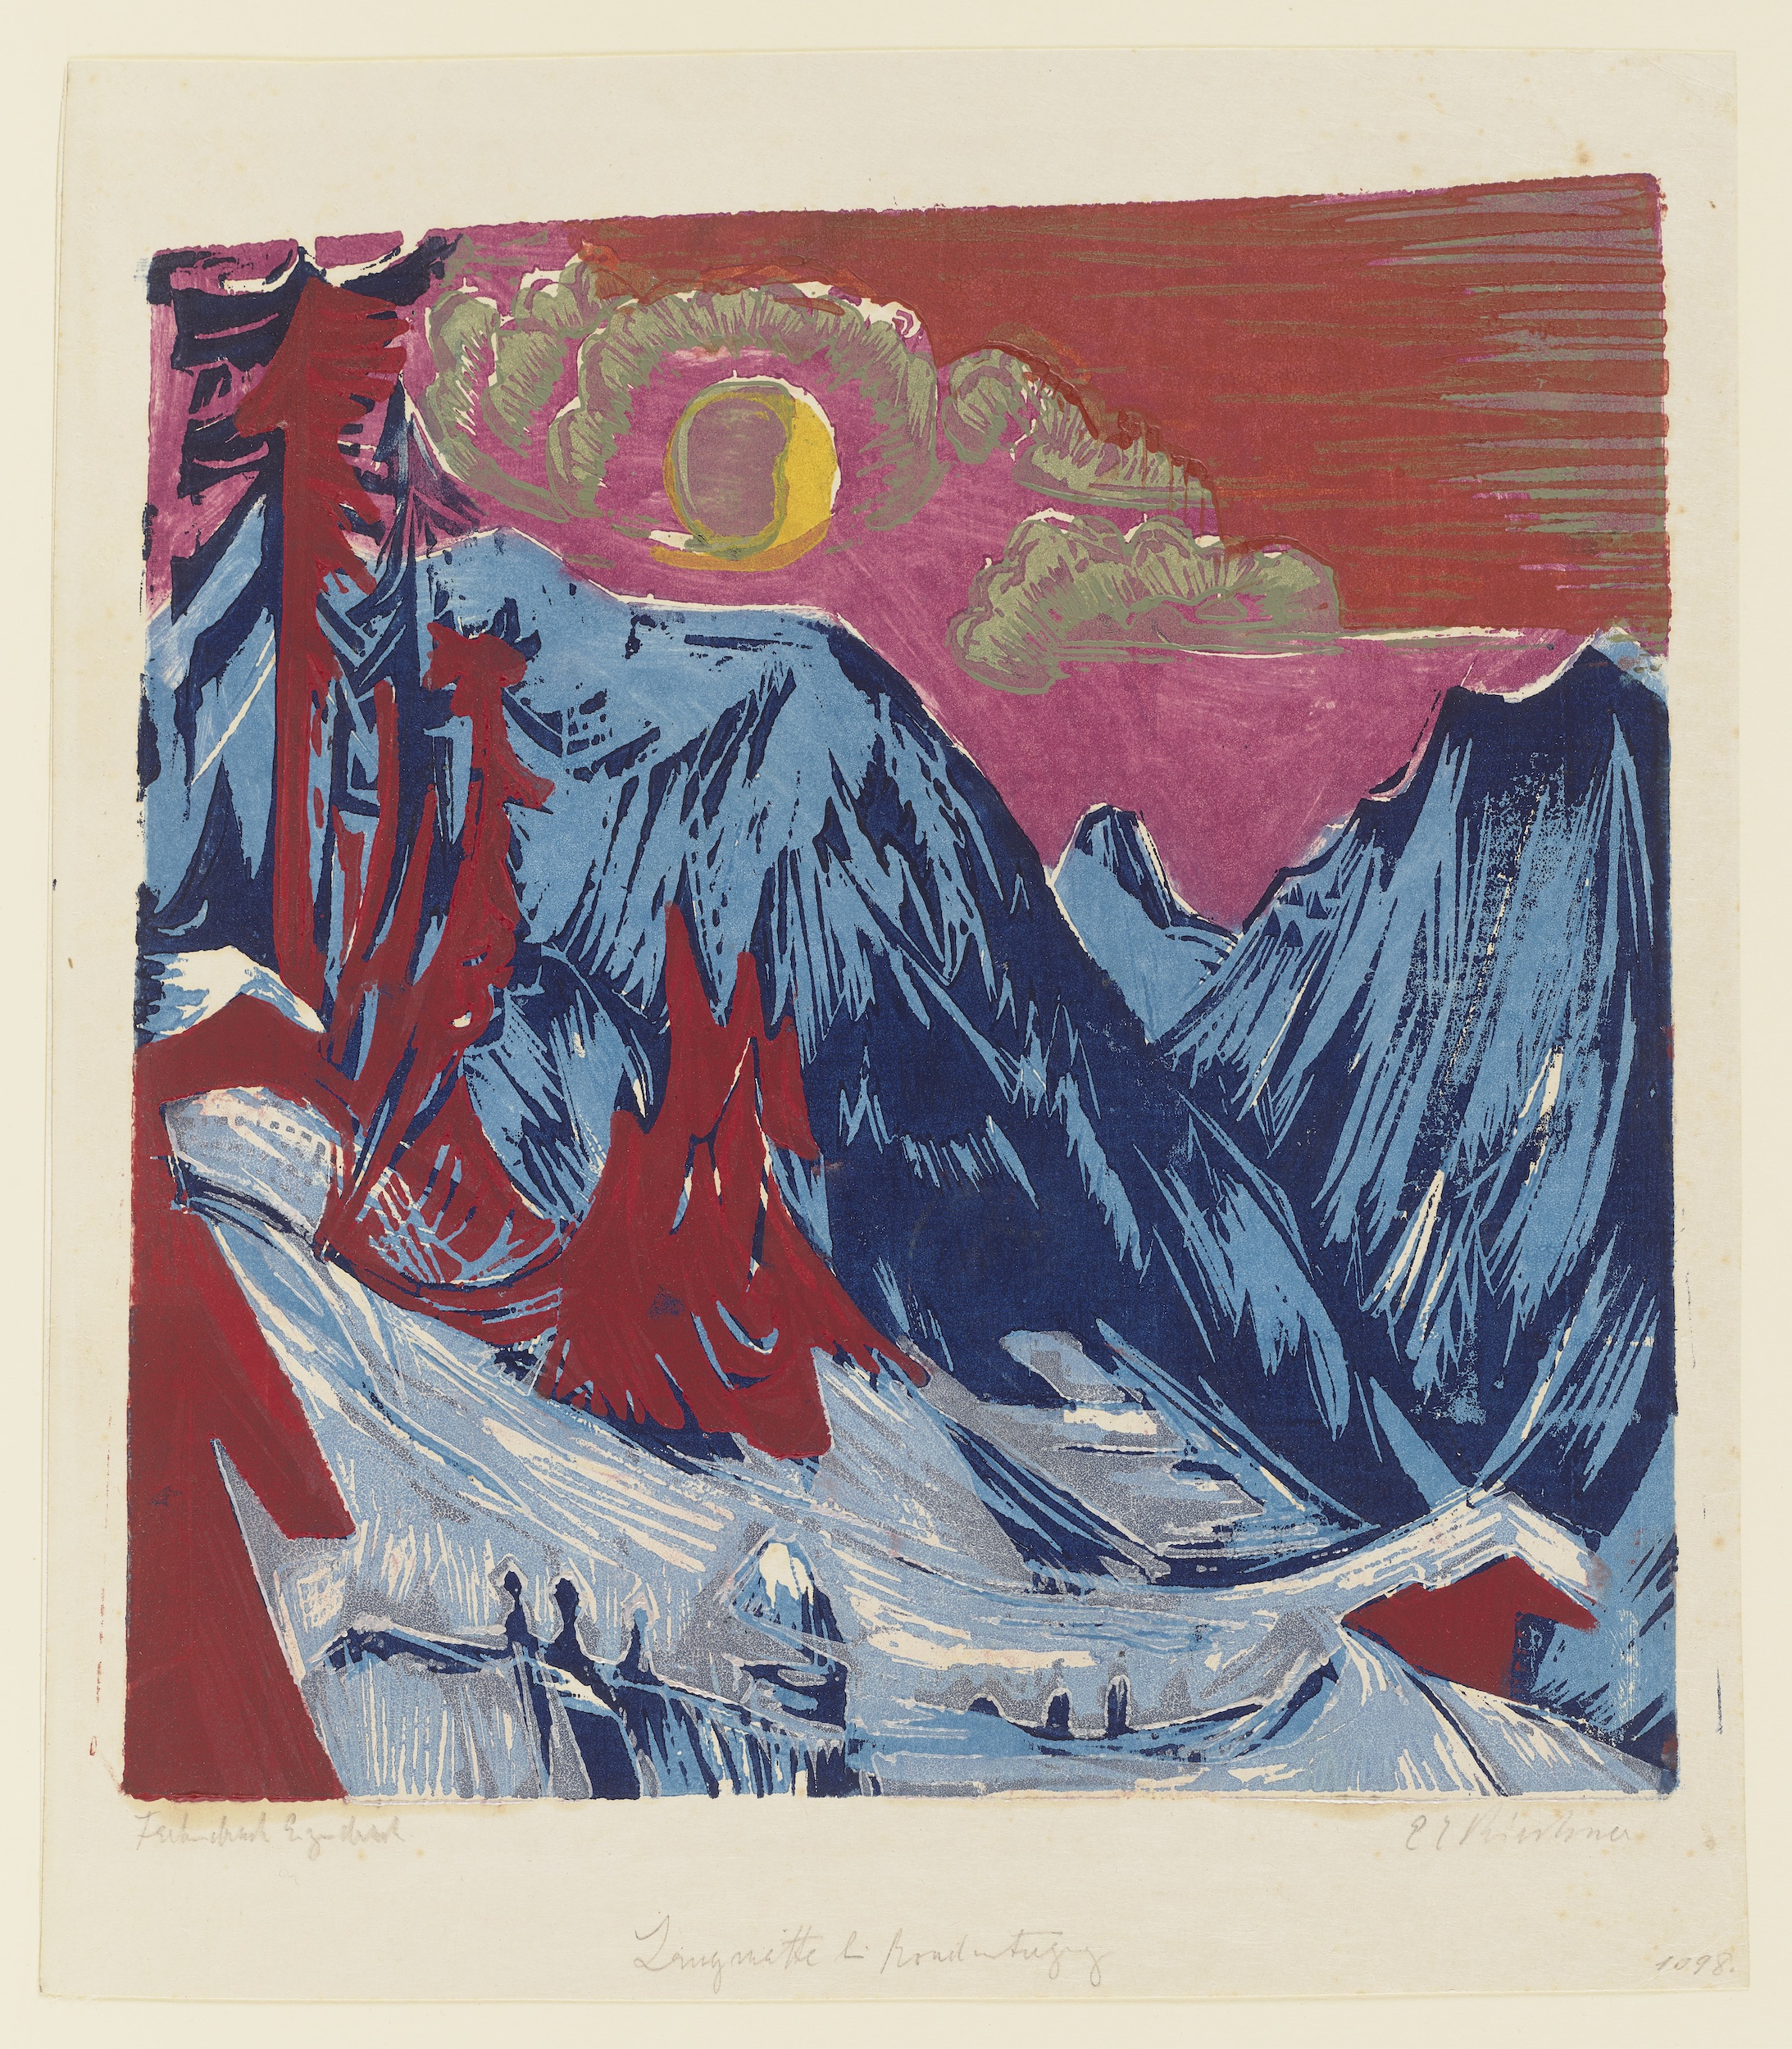 月下の雪景色 by Ernst Ludwig Kirchner - 1919年 - 36.7 x 32.3 cm 